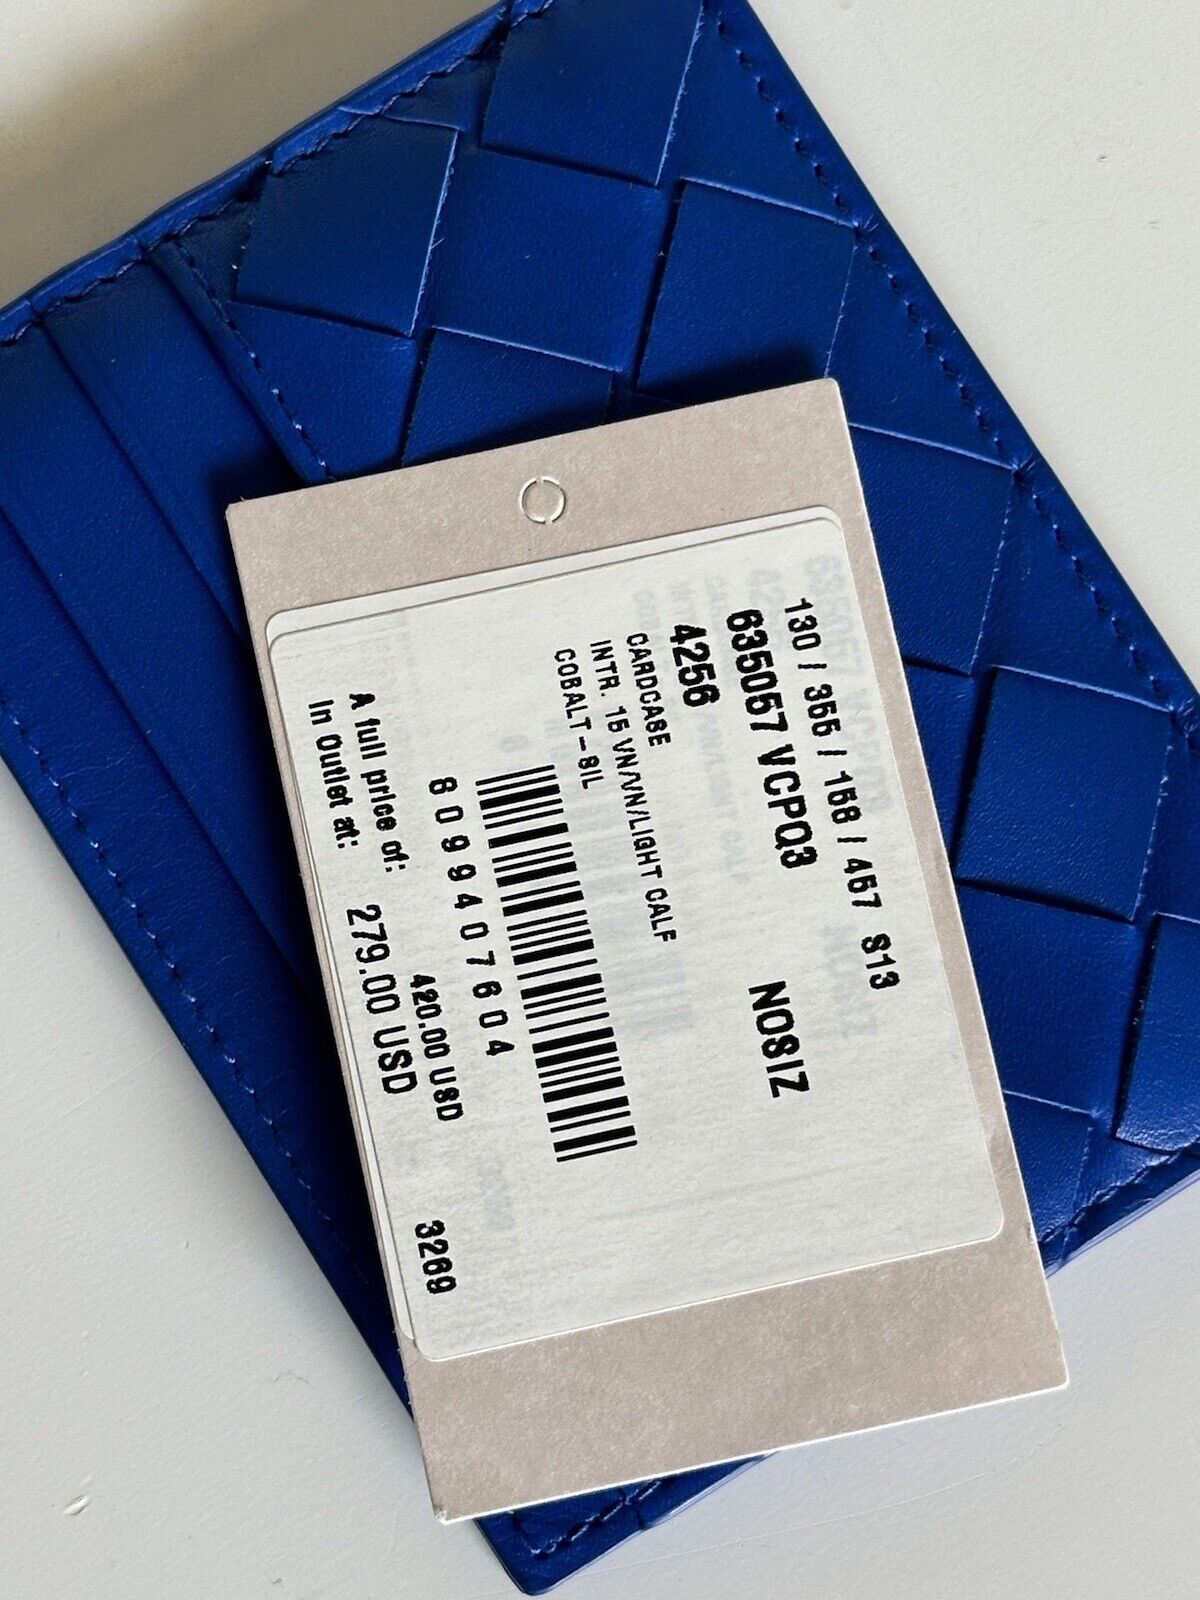 Neu mit Etikett: 420 $ Bottega Veneta Herren-Kartenetui aus Intrecciato-Leder Blau 635057 Italien 